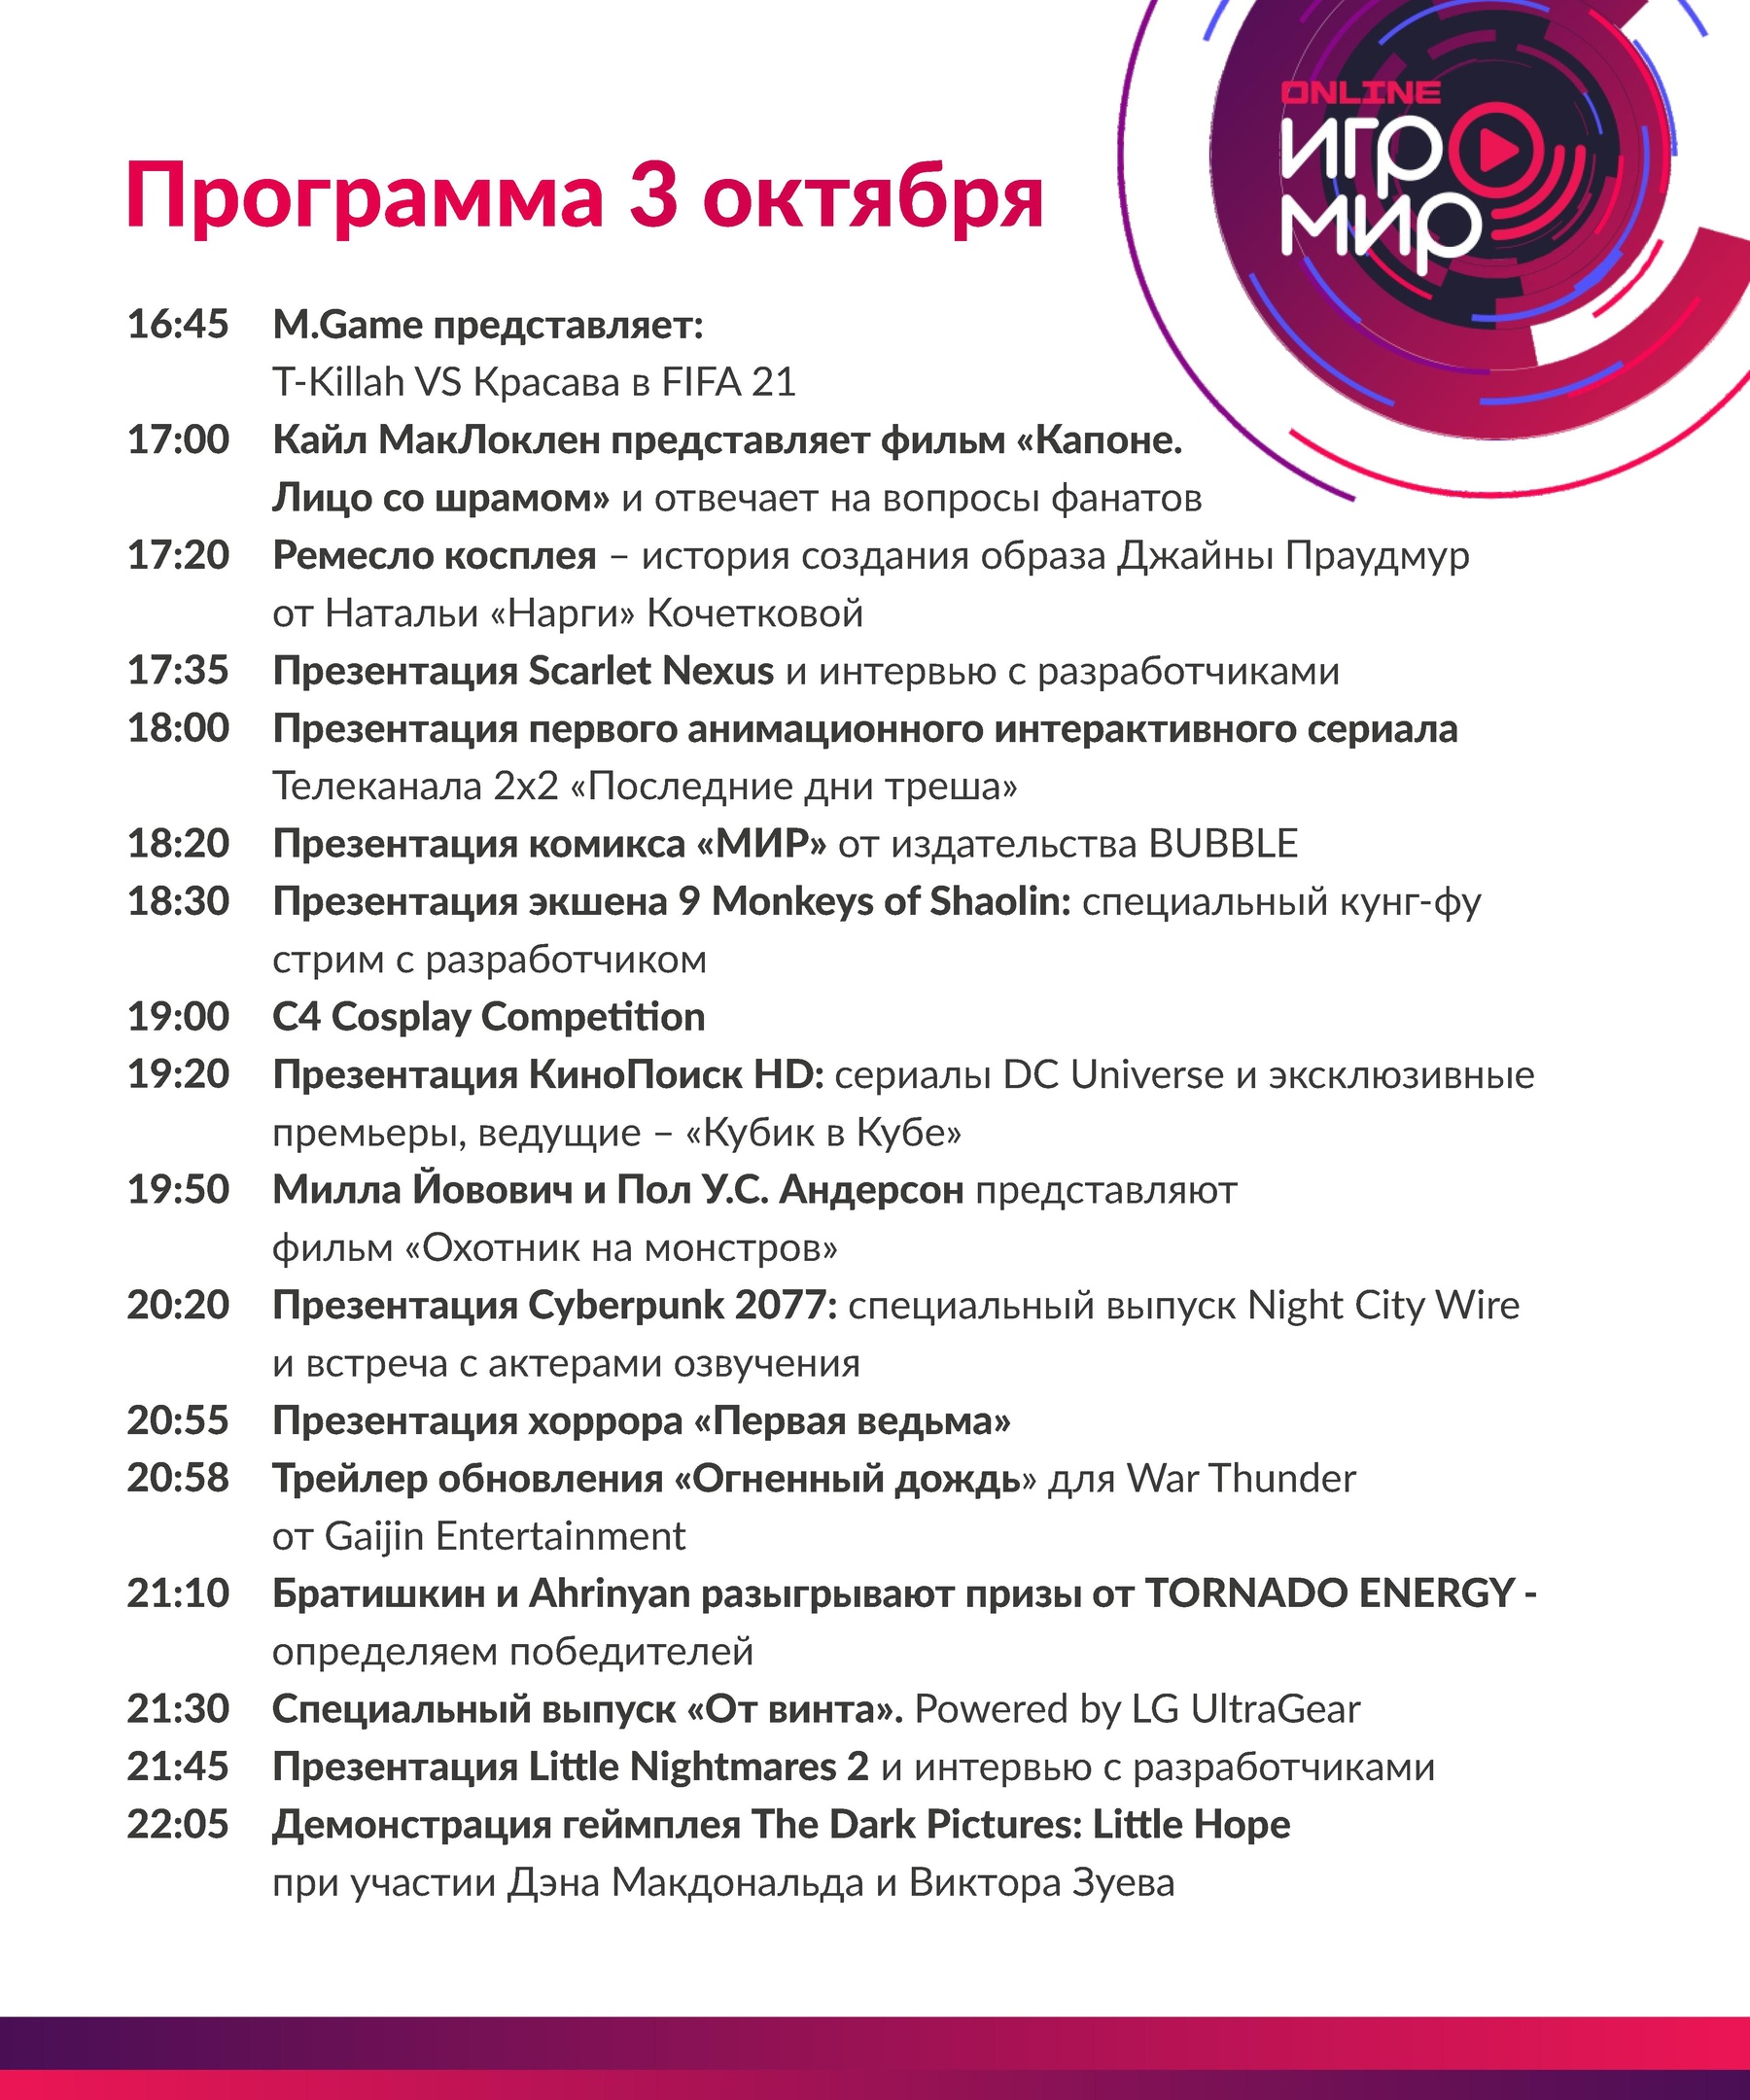 ИгроМир Online и Comic Con Russia Online 2020 - завтра!